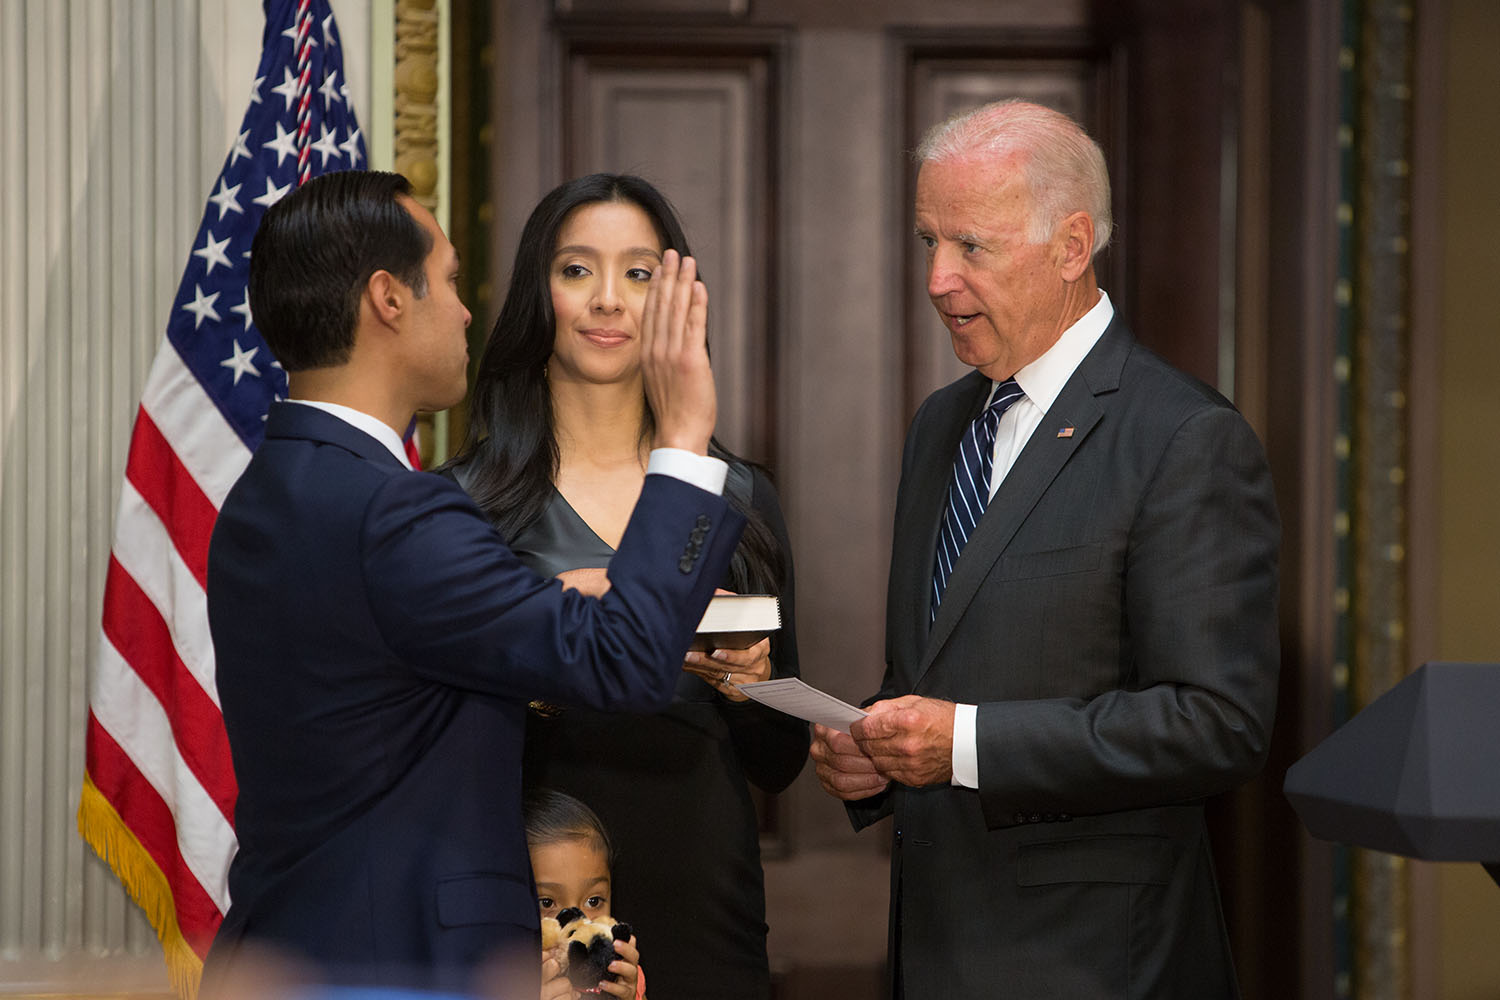 Vice President Joe Biden ceremonially swears in Julian Castro as Secretary of Housing and Urban Development